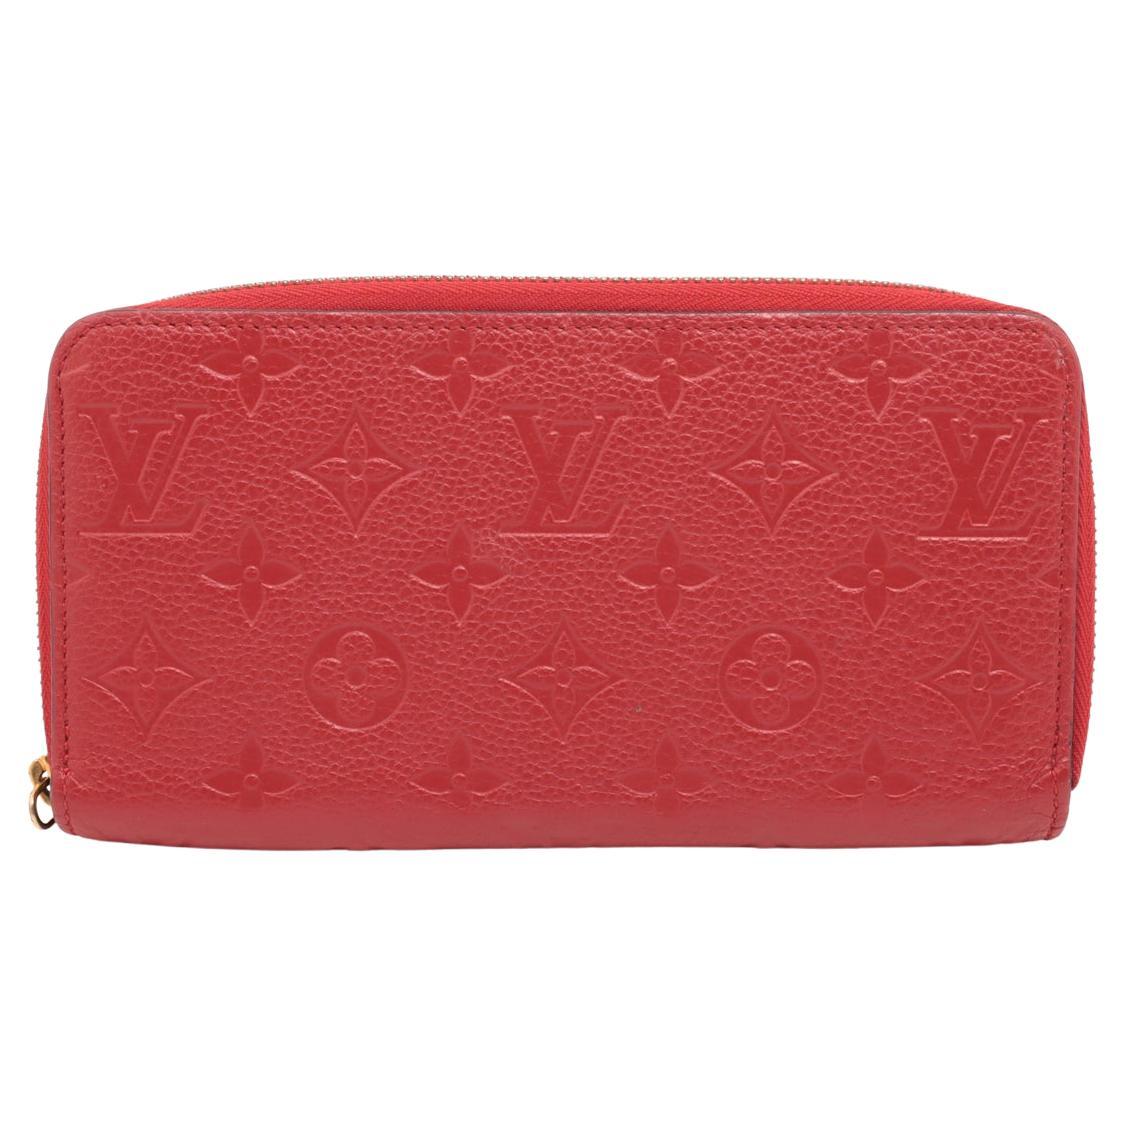 Louis Vuitton Monogram Empreinte Zippy Wallet Red